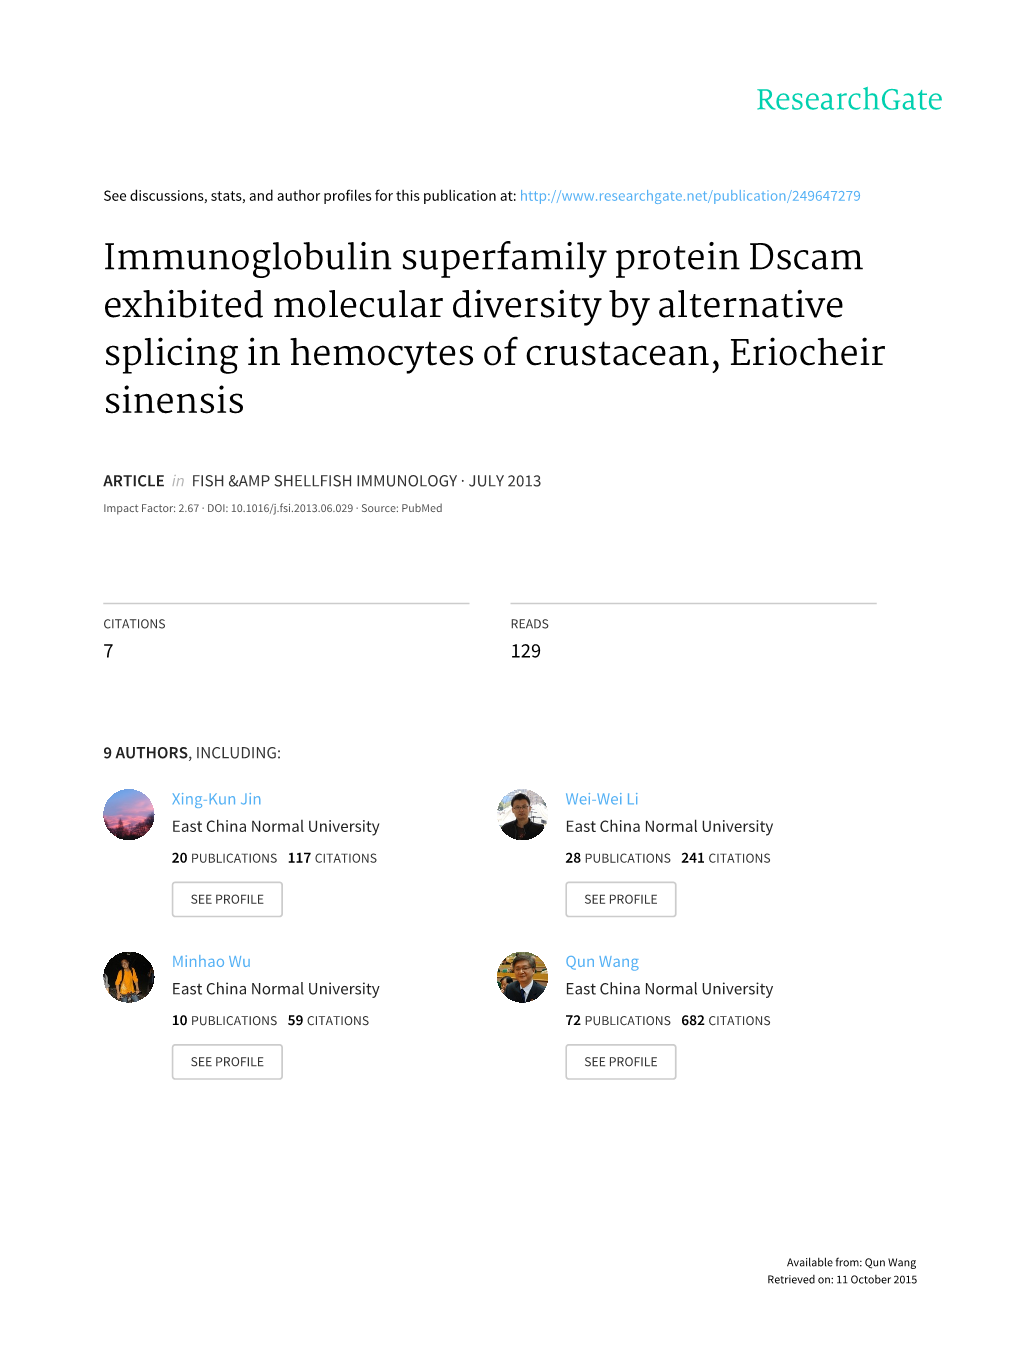 Immunoglobulin Superfamily Protein Dscam Exhibited Molecular Diversity by Alternative Splicing in Hemocytes of Crustacean, Eriocheir Sinensis